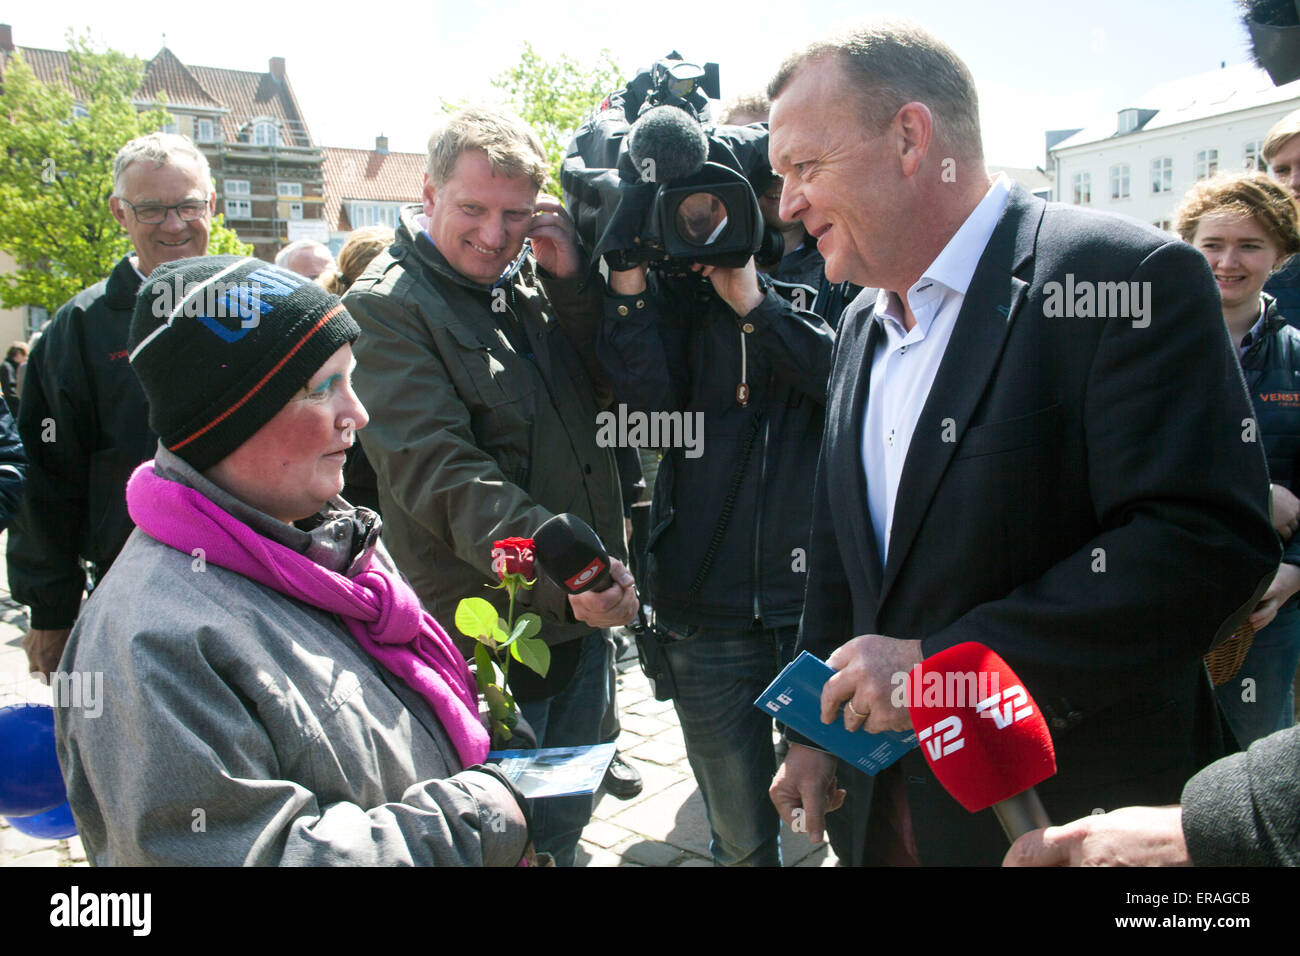 Koege, Denmark, May 30th, 2015: Danish opposition leader Lars Loekke Rasmussen (R) meets electors in Koege near Copenhagen Credit:  OJPHOTOS/Alamy Live News Stock Photo